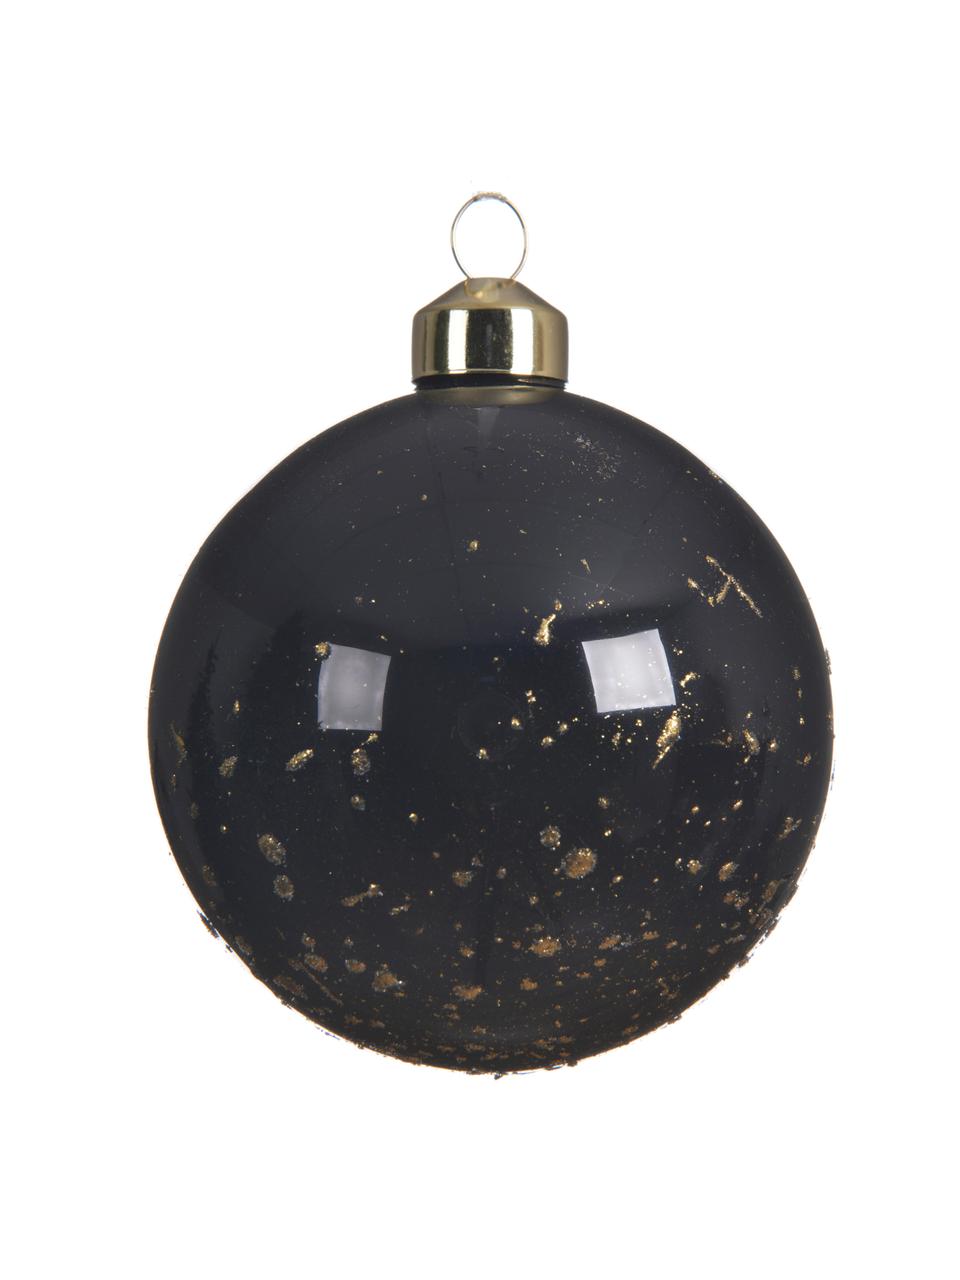 Sada vánočních ozdob Spotty, 4 díly, Černá, bílá, zlatá, Ø 8 cm